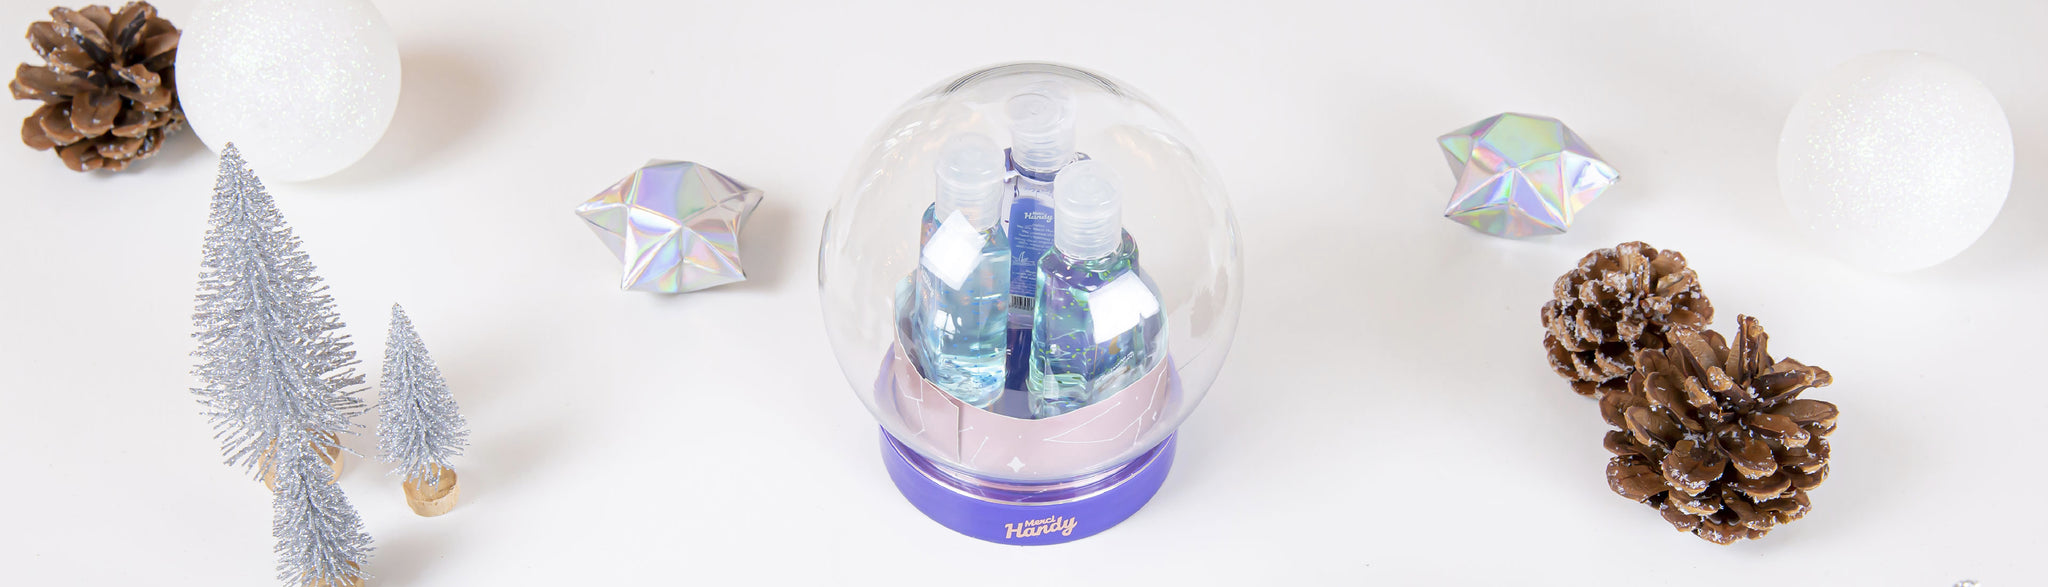 DIY : transforme ta Crystal Ball en boule à neige !